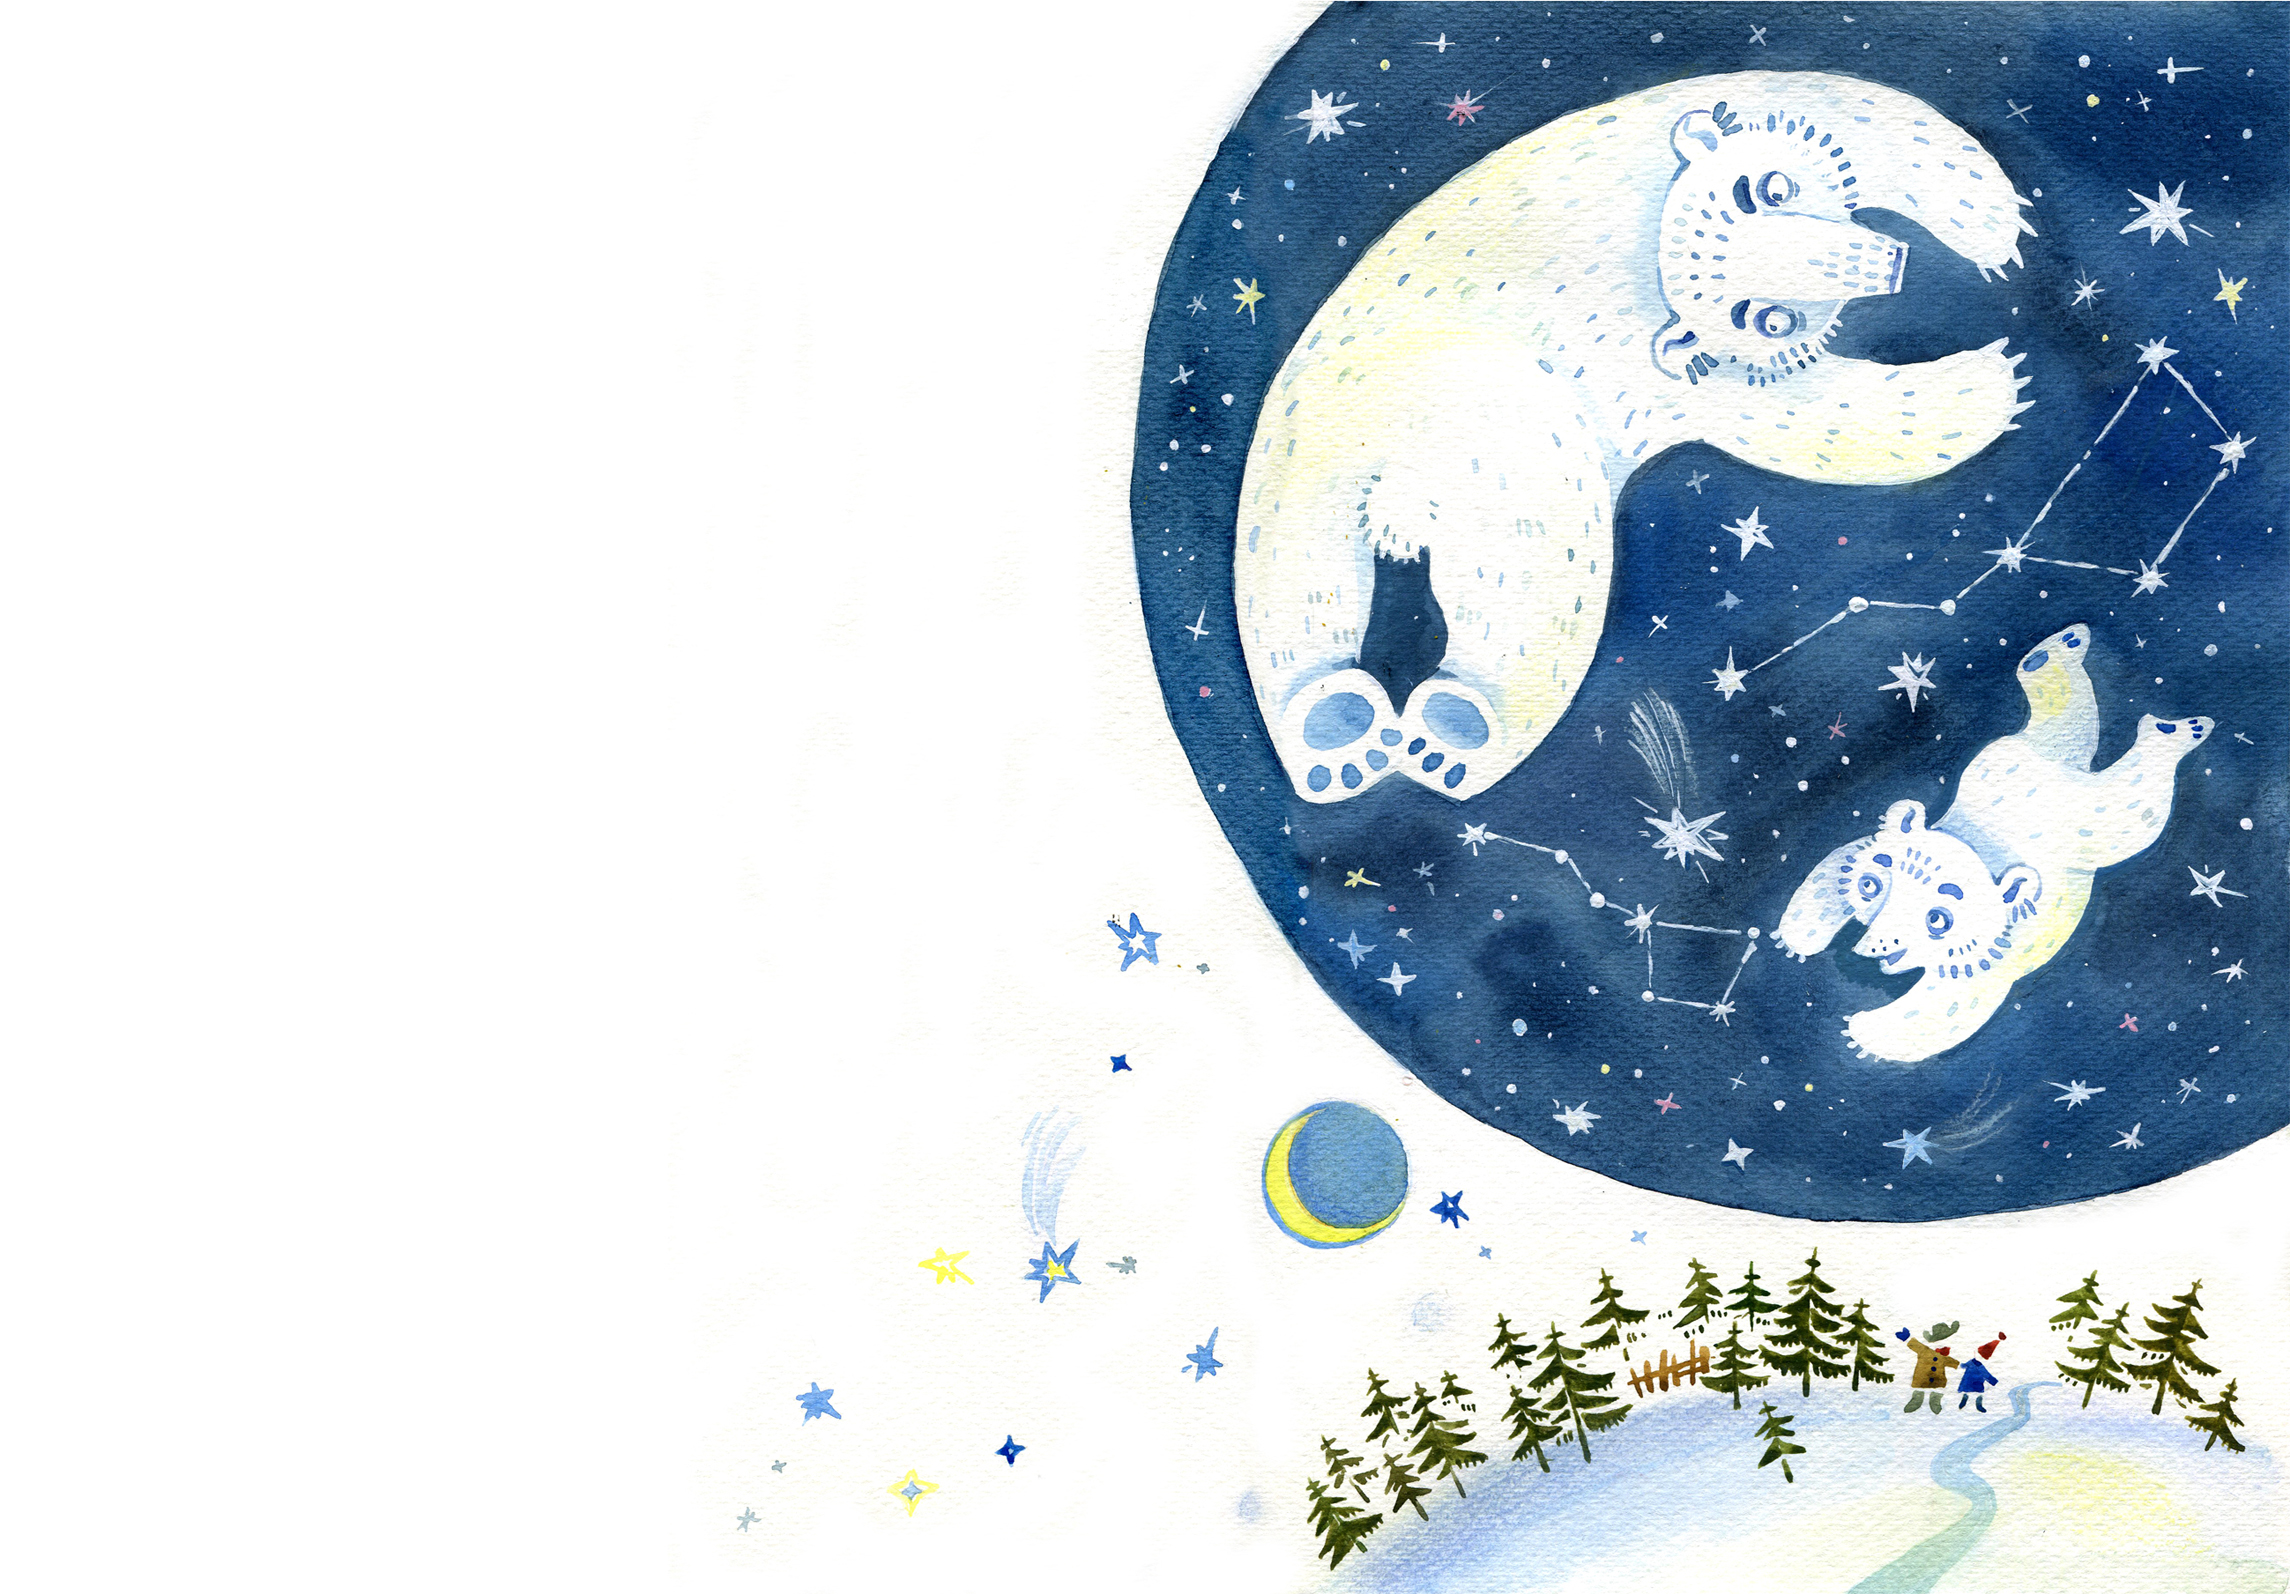 Колыбельная медведицы без. Иллюстрация к колыбельной медведицы. Иллюстрация к колыбельной медведицы 2 класс. Иллюстрация к Колыбельная медведицы для детей. Колыбельная медведицы рисунок.